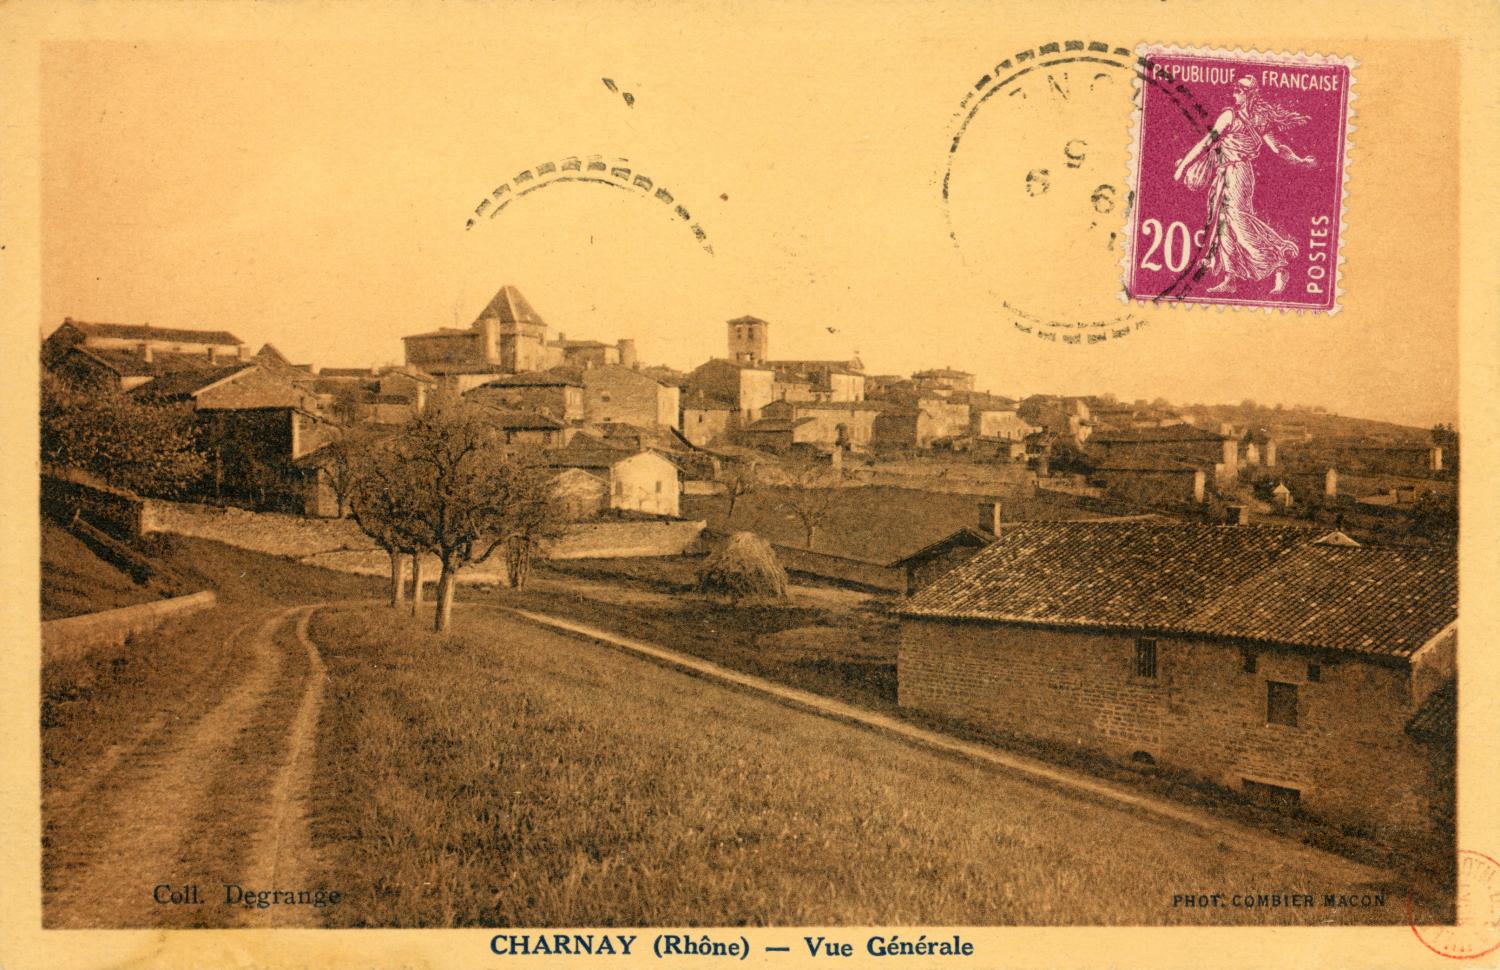 Charnay (Rhône). - Vue générale